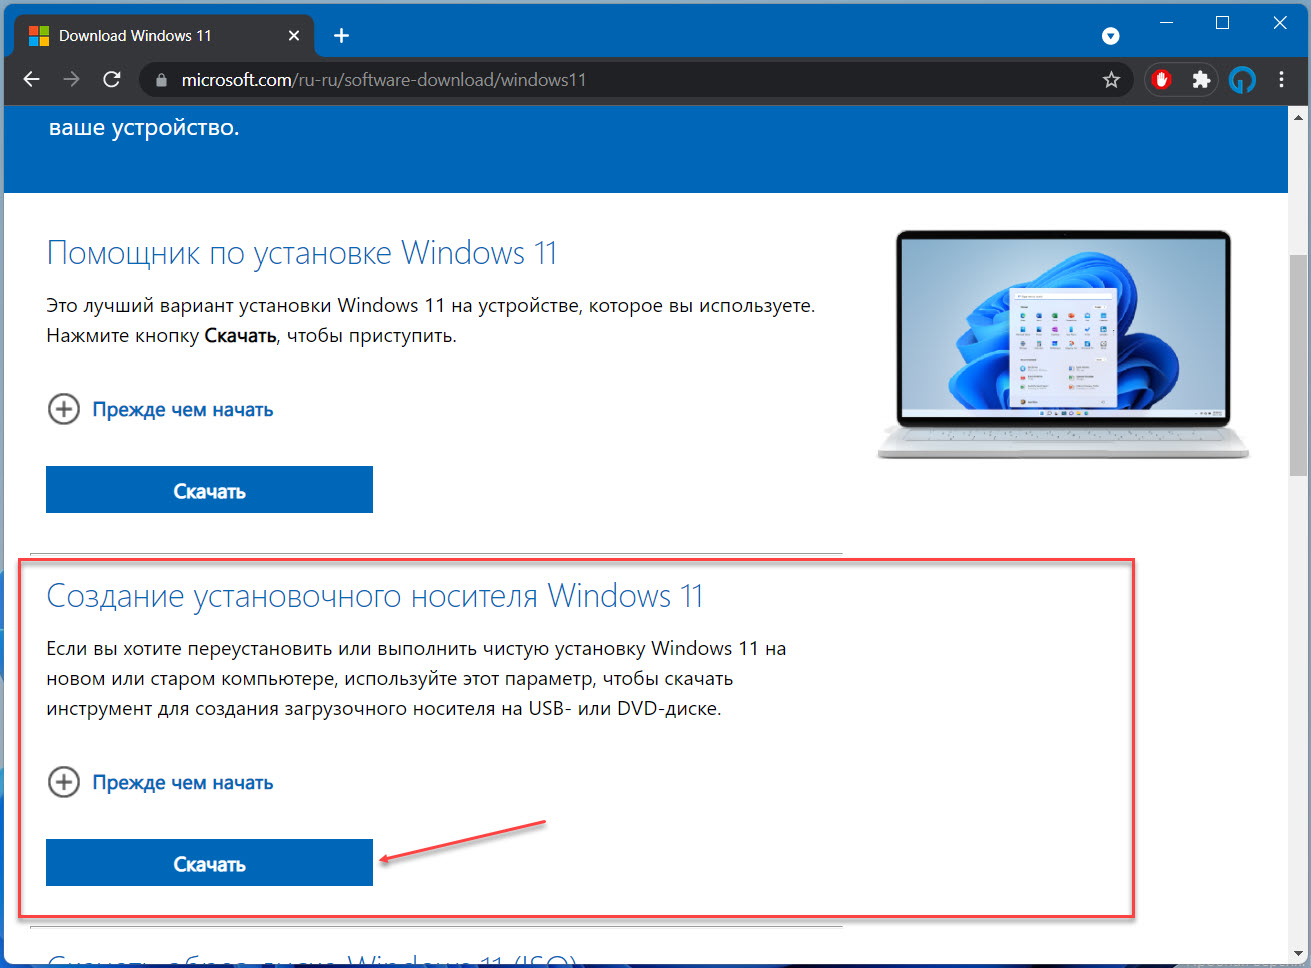 Способ 2 – Создание установочного носителя Windows 11